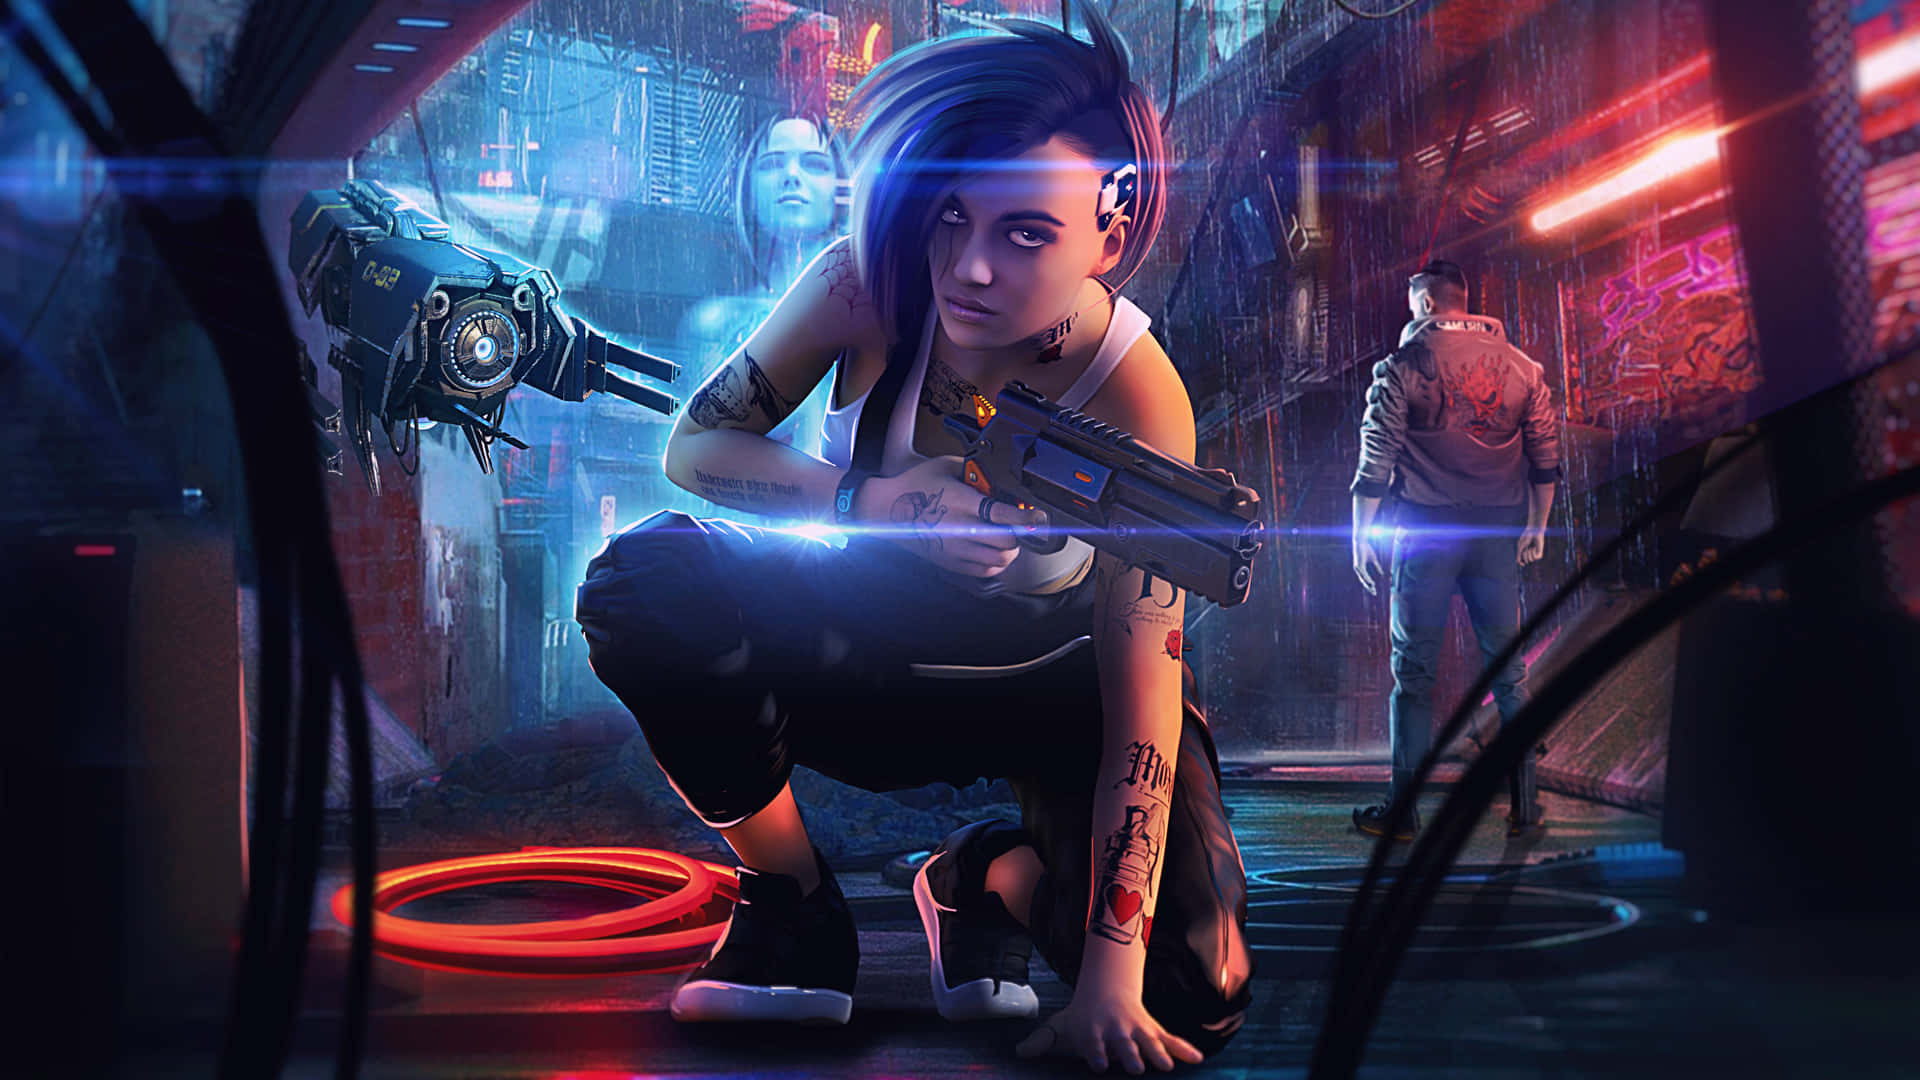 Futuristic Sci-Fi Game Battle Scene in Vibrant Colors Wallpaper